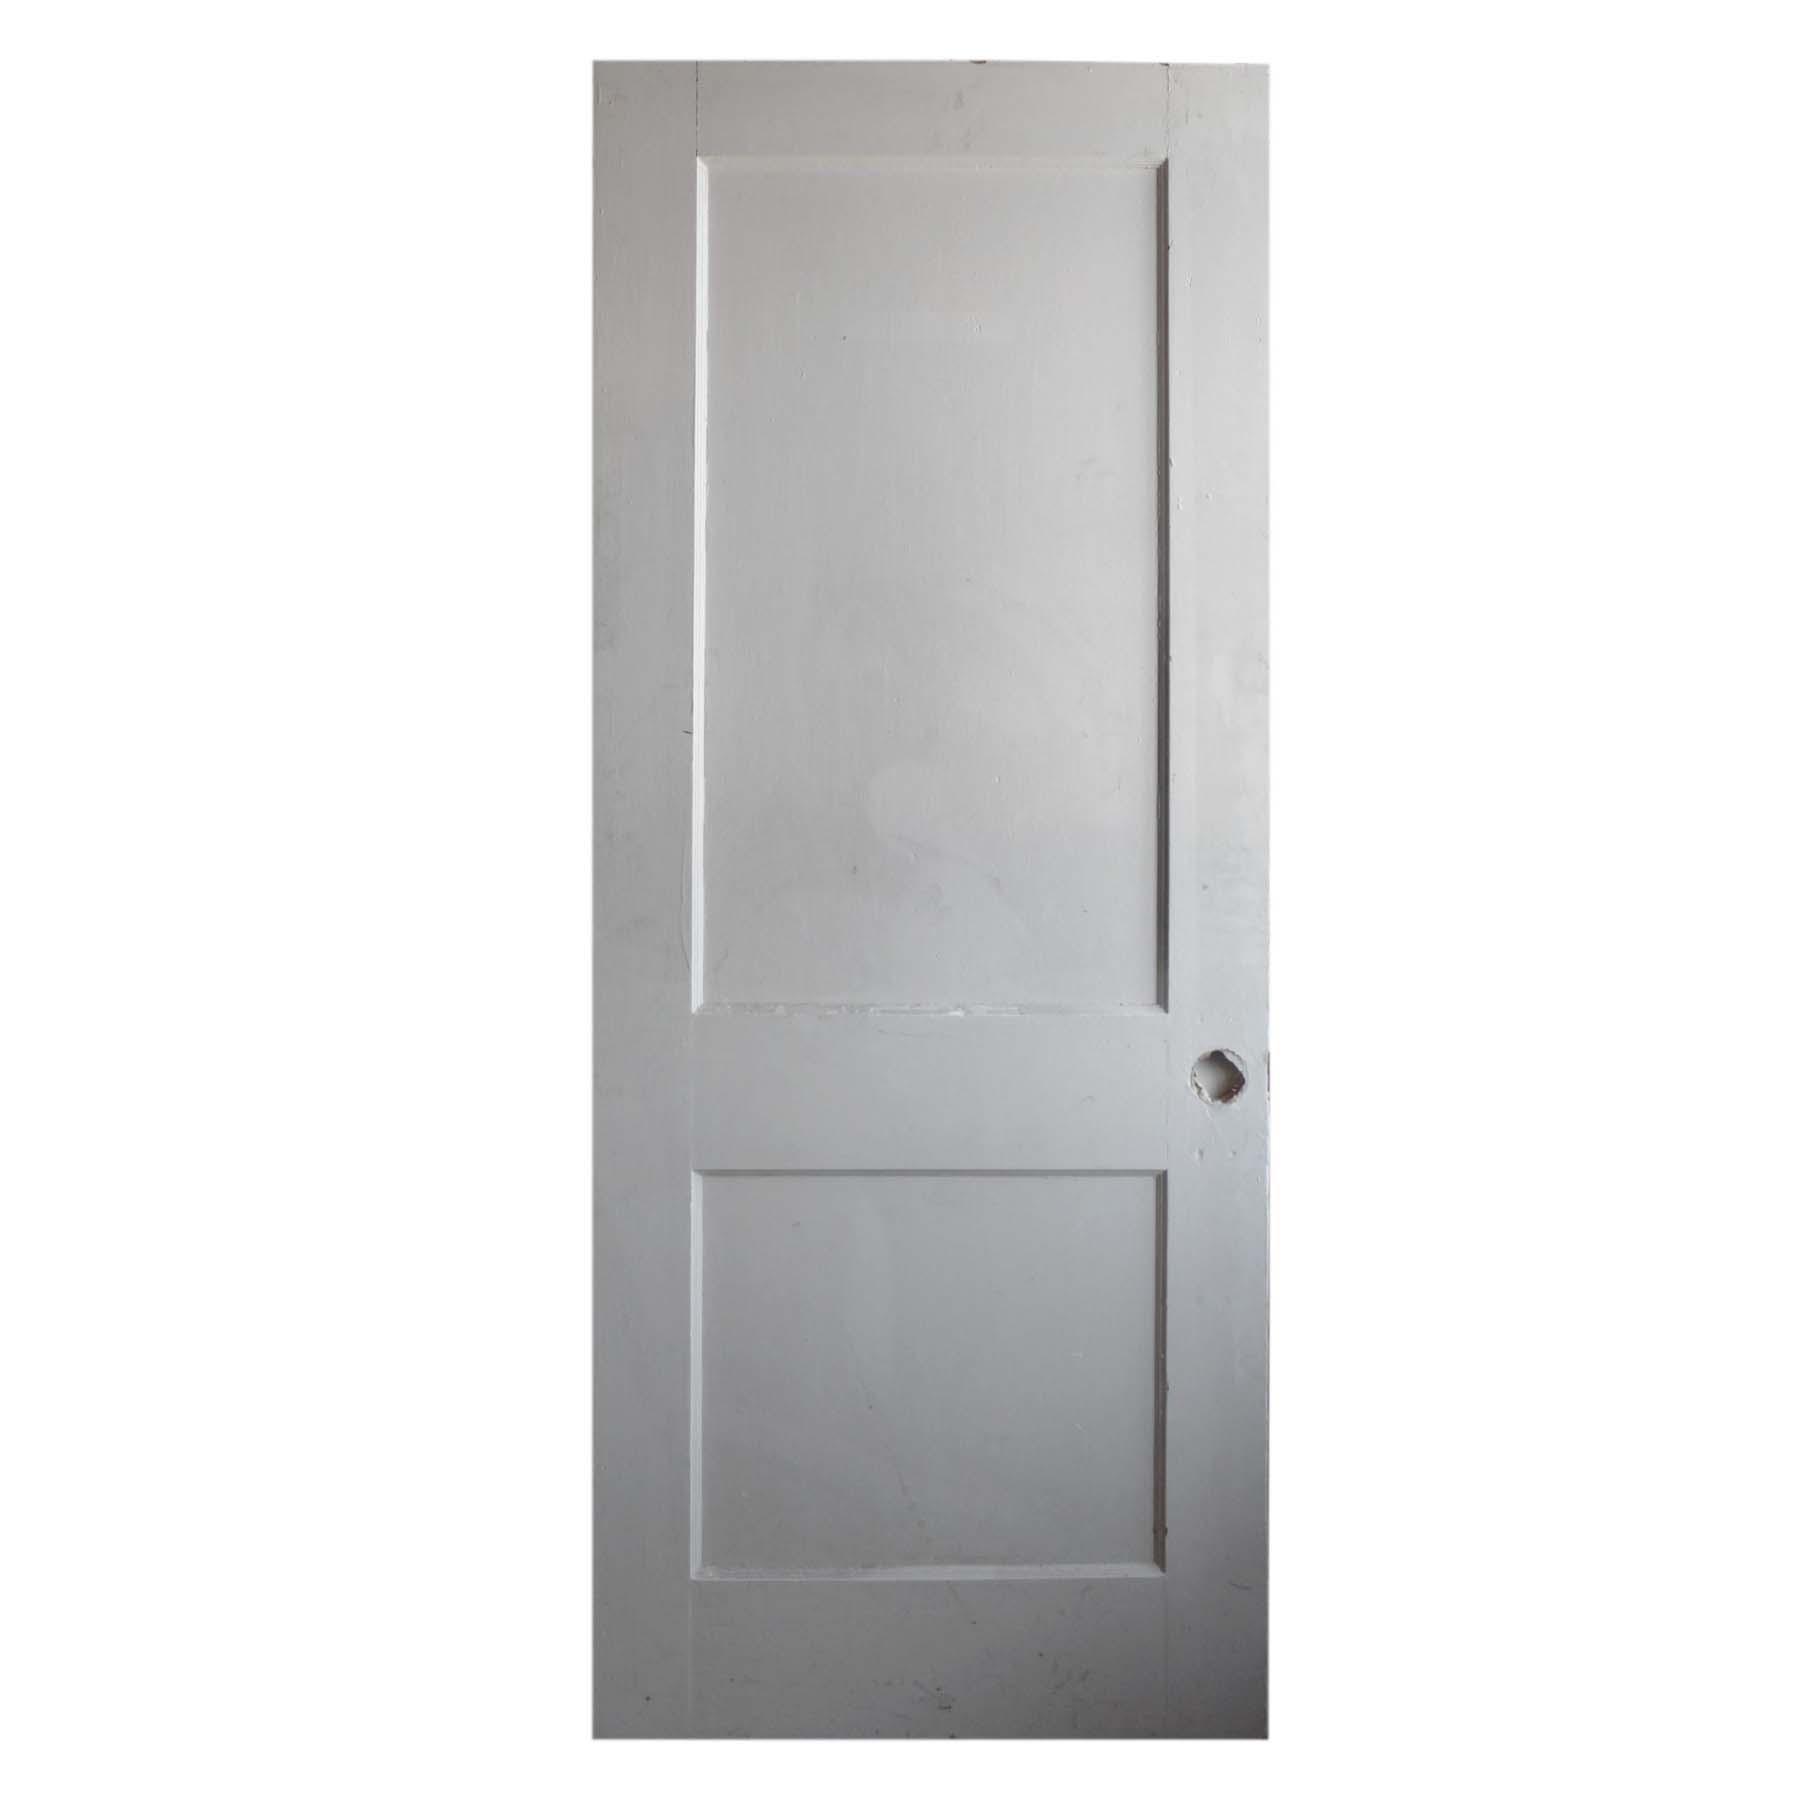 Reclaimed 32” Two-Panel Solid Wood Door-71801